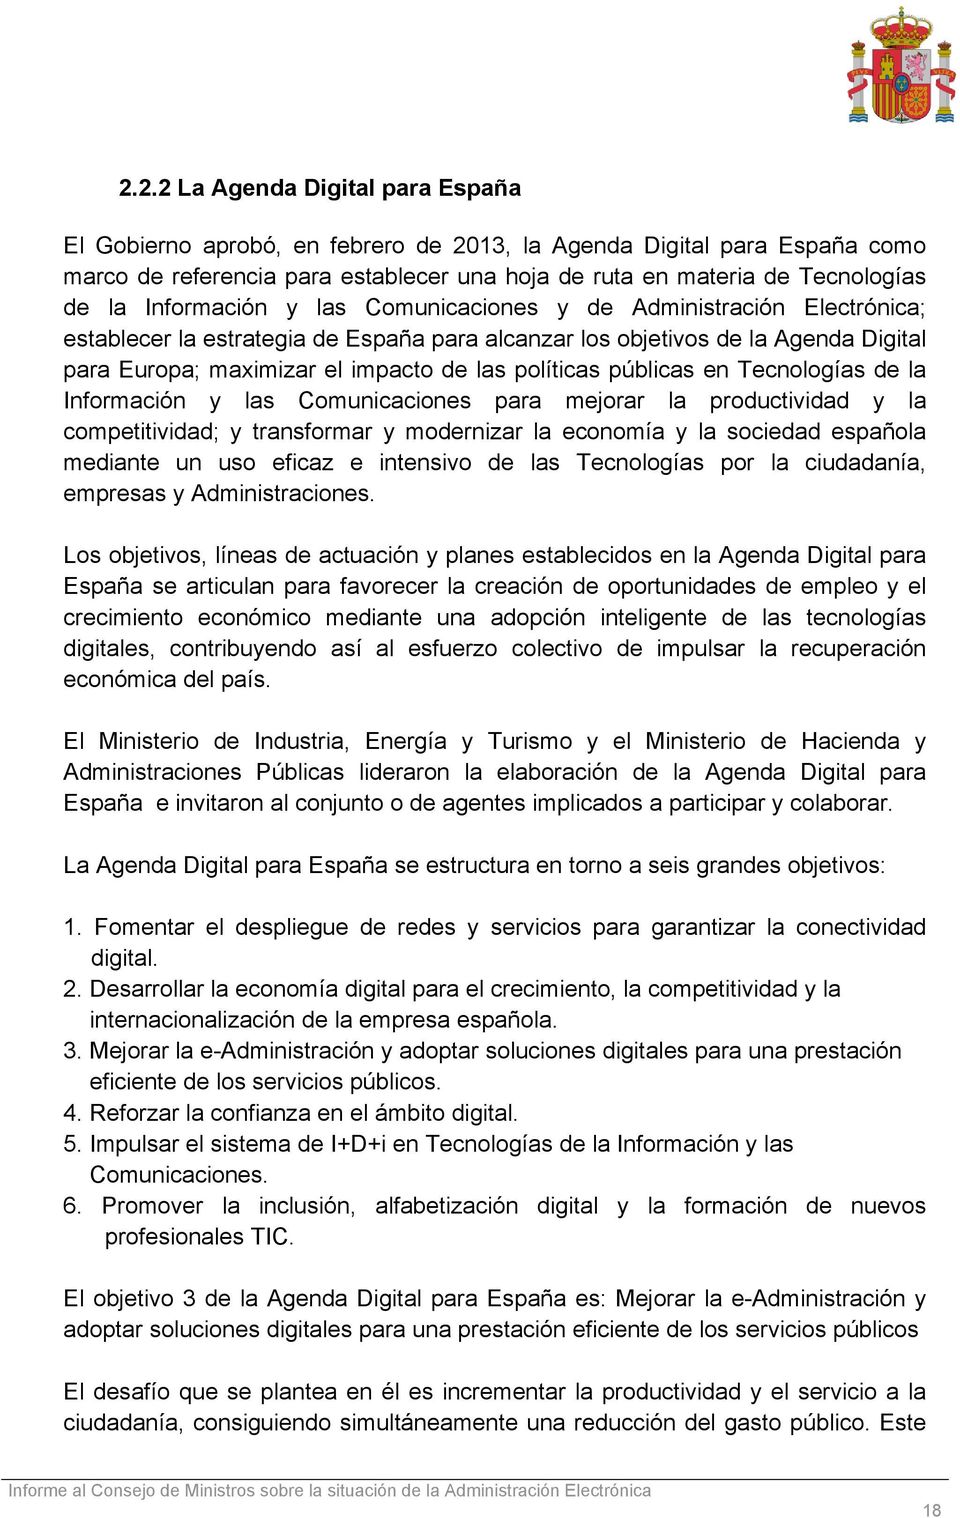 políticas públicas en Tecnologías de la Información y las Comunicaciones para mejorar la productividad y la competitividad; y transformar y modernizar la economía y la sociedad española mediante un